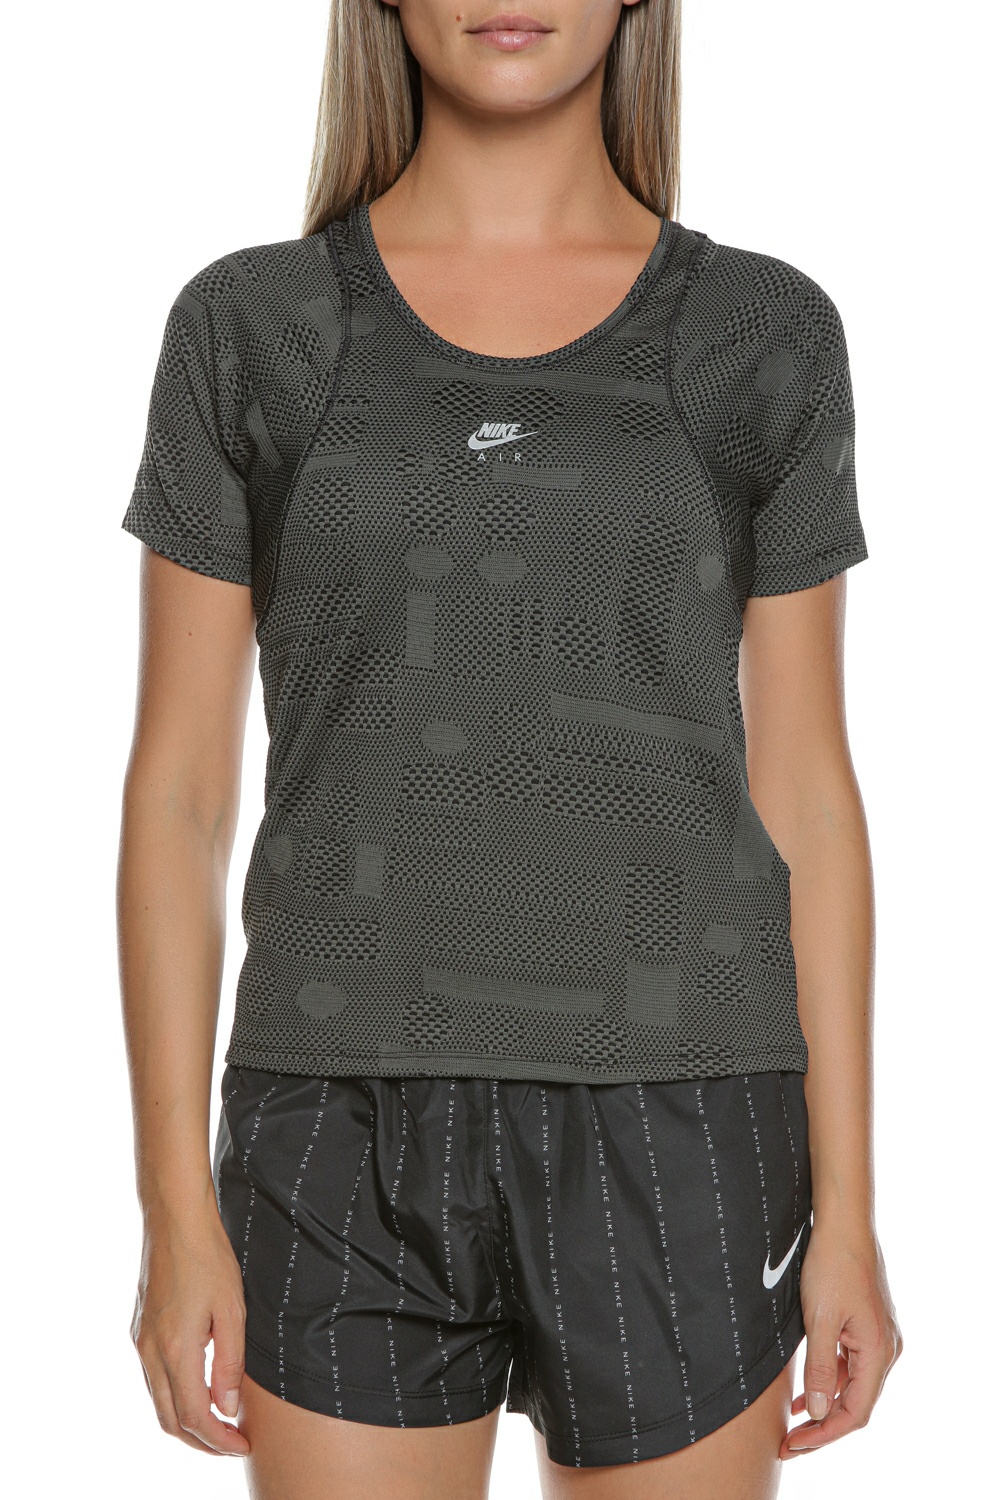 Γυναικεία/Ρούχα/Αθλητικά/T-shirt-Τοπ NIKE - Γυναικεία μπλούζα NIKE NK AIR DF TOP SS μαύρη